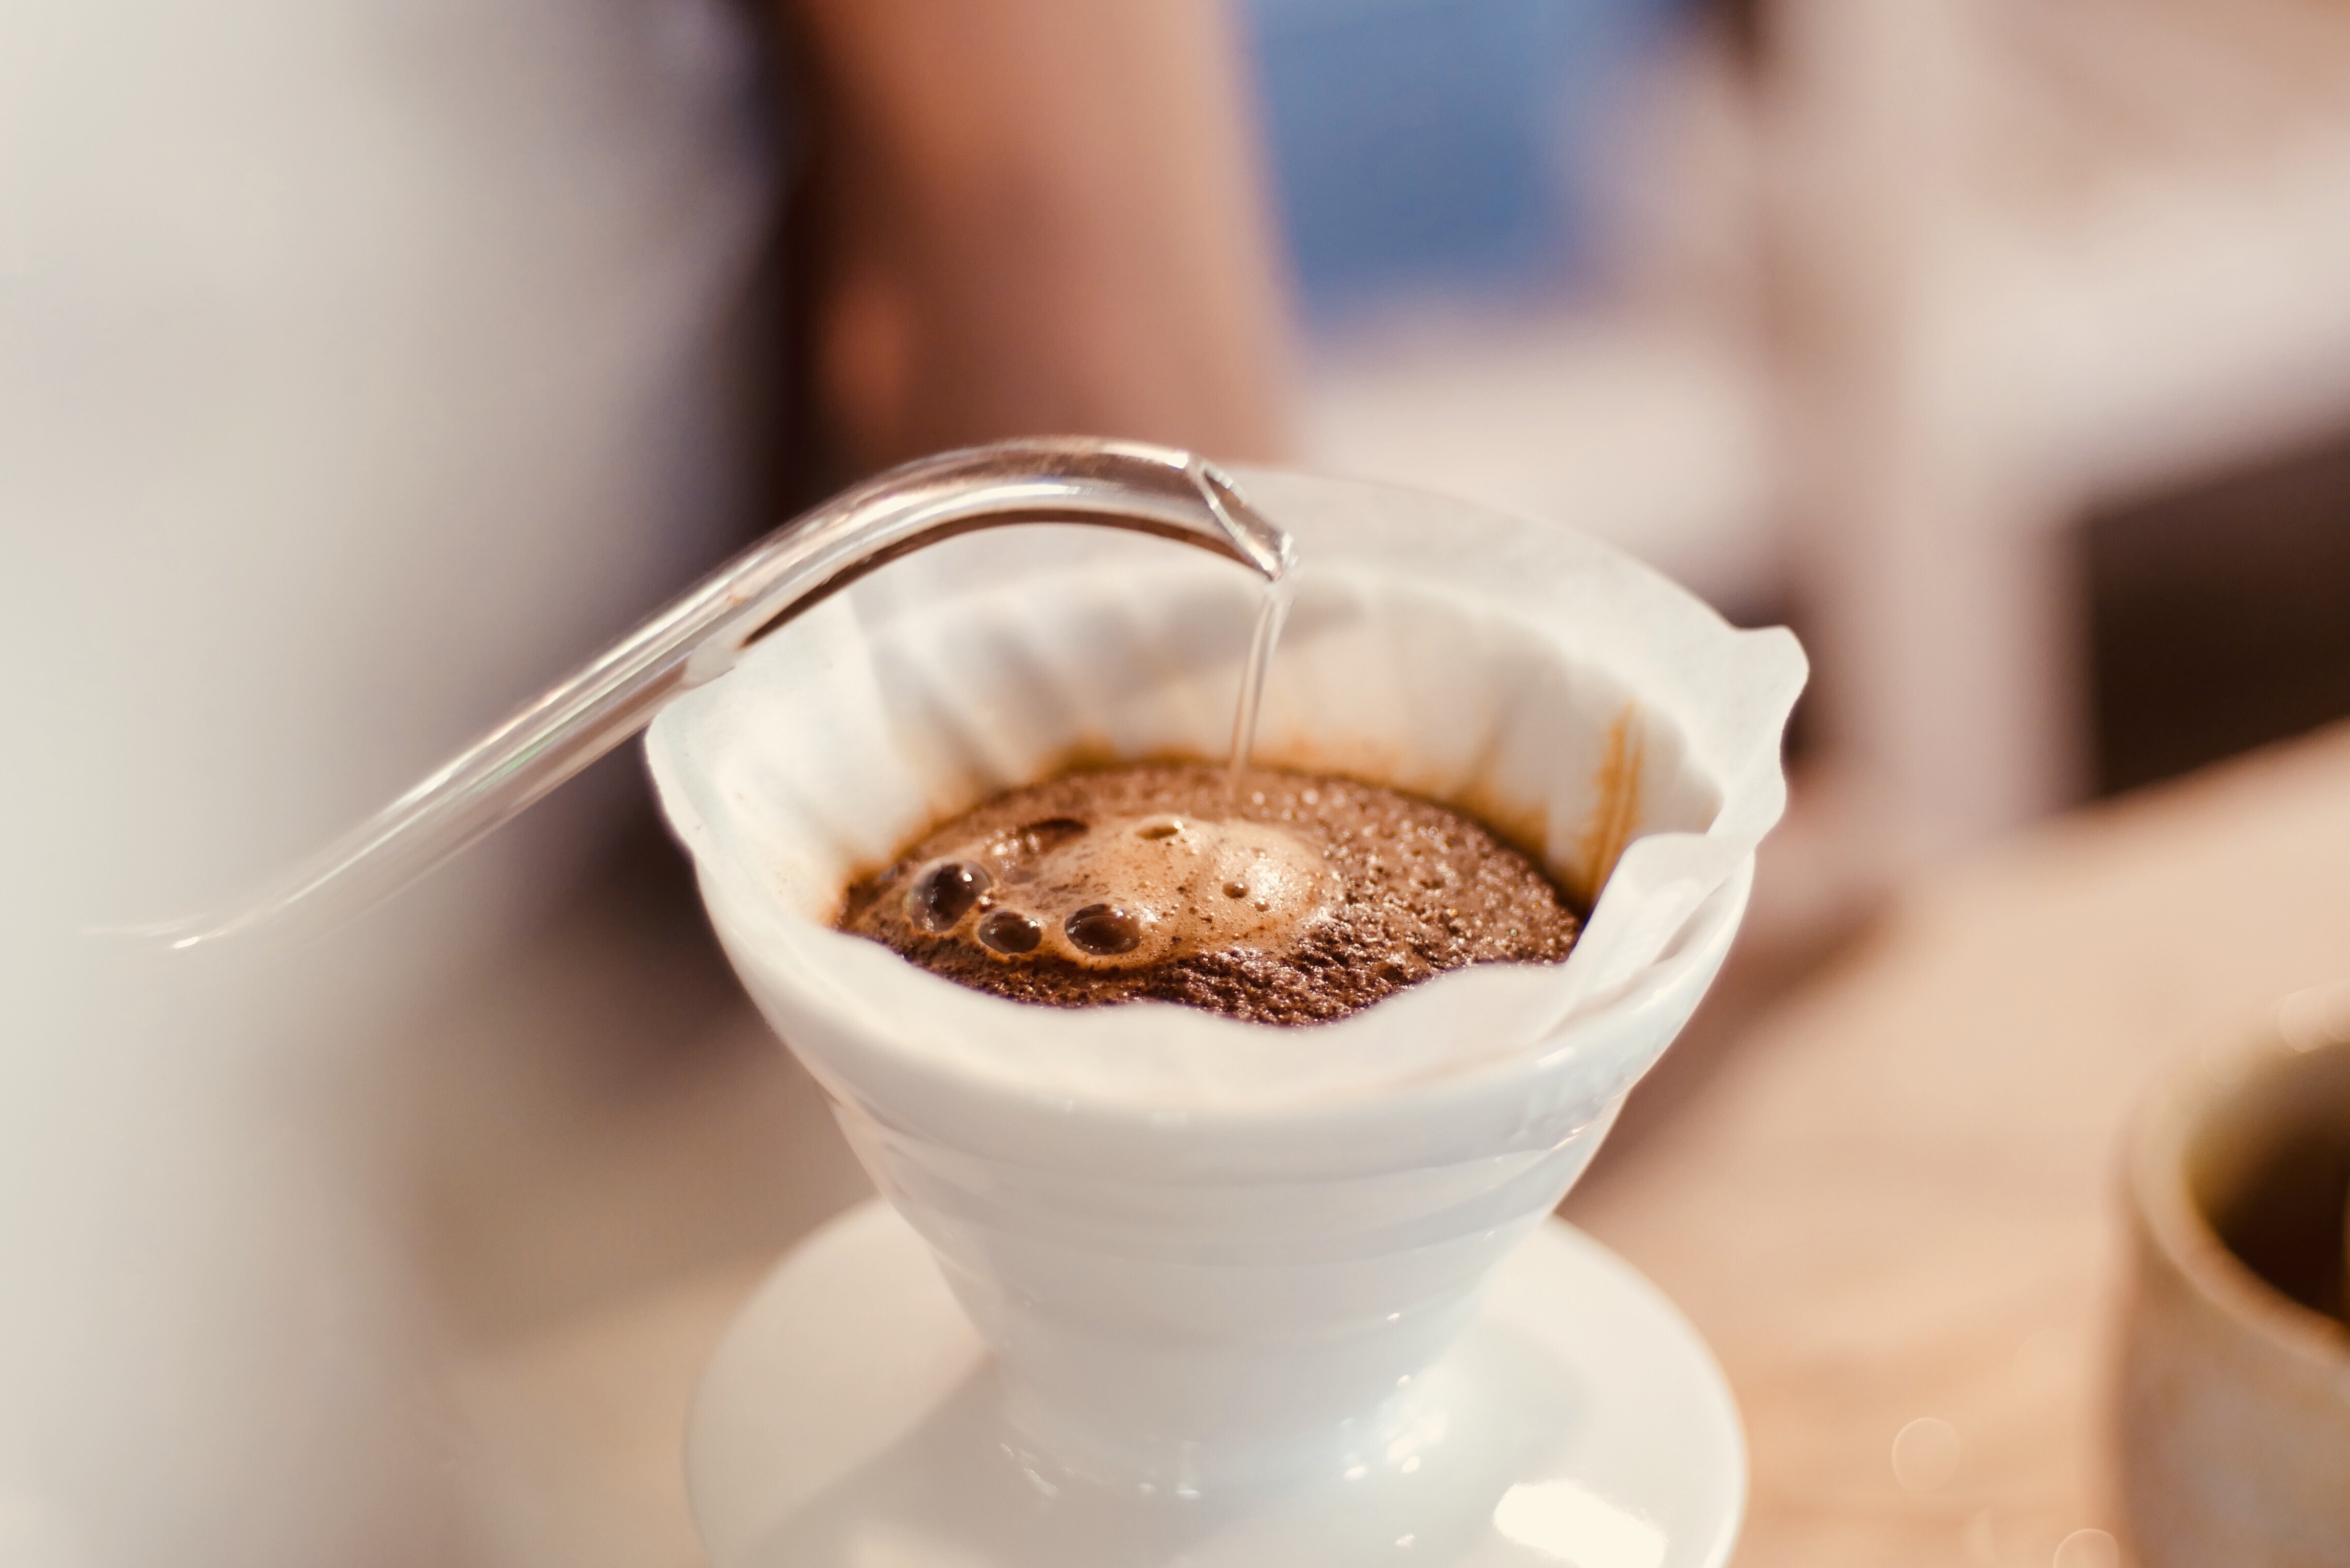 Le marc de café fleurit dans une coulée sur le goutteur de café alors que de l'eau est versée dessus